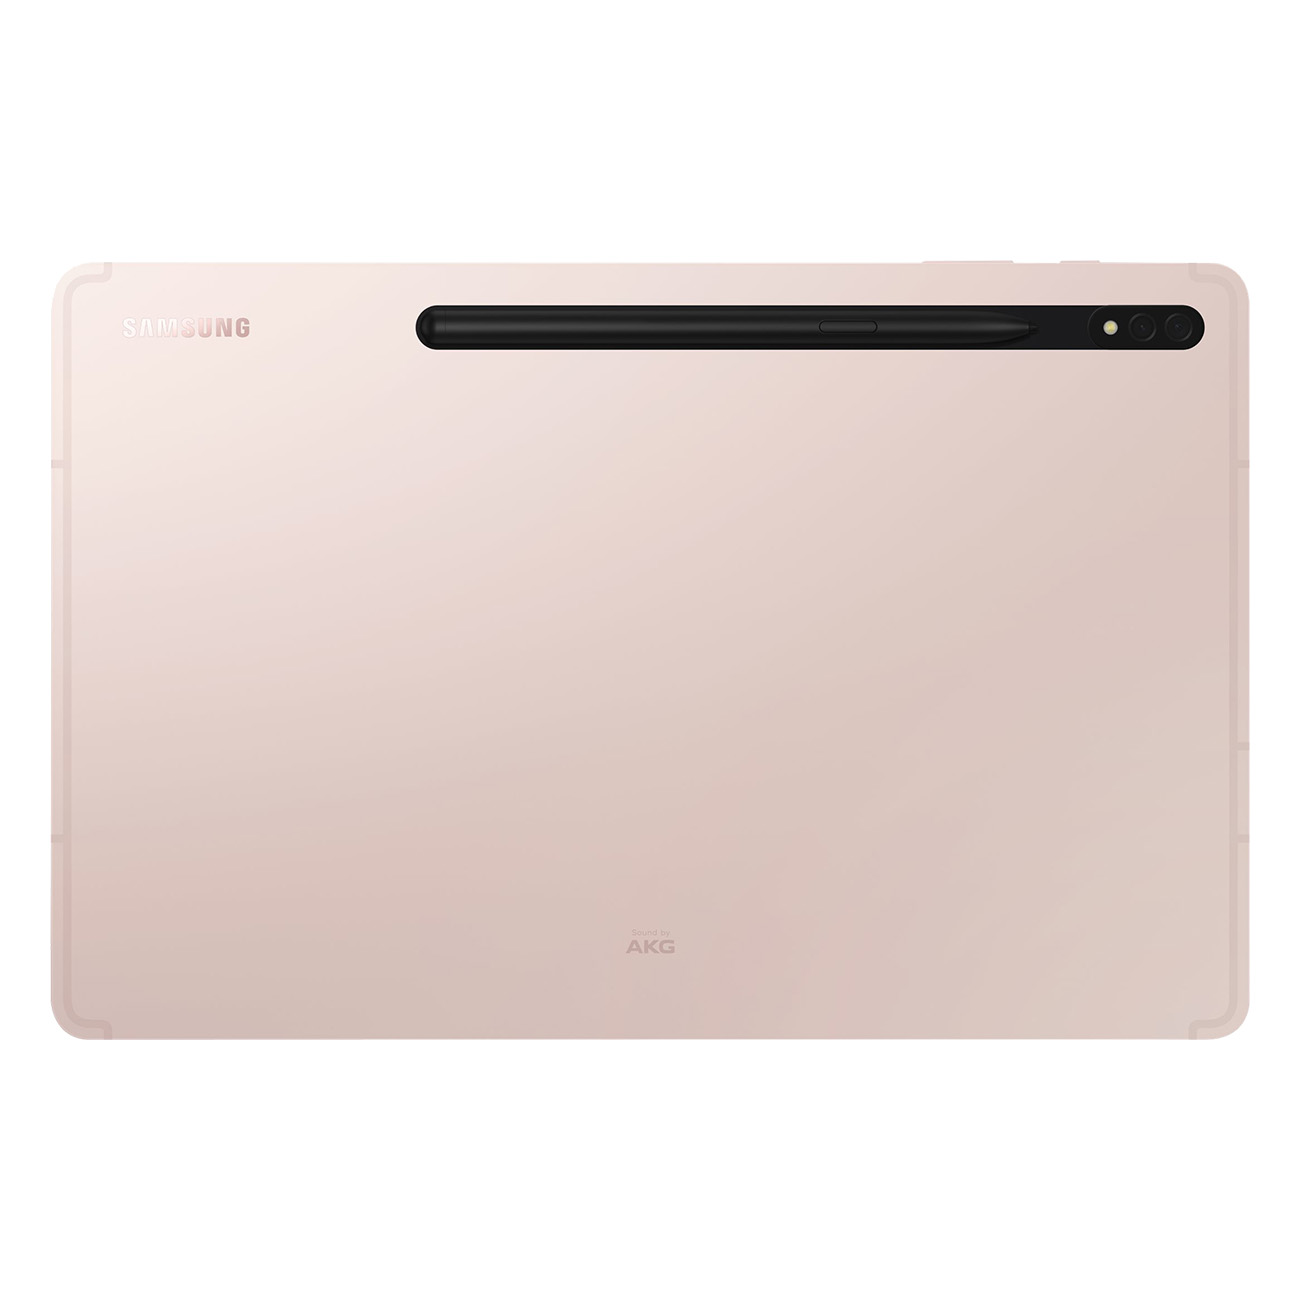 SAMSUNG Galaxy Tab 256 S8+, Zoll, gold GB, 12,4 Tablet